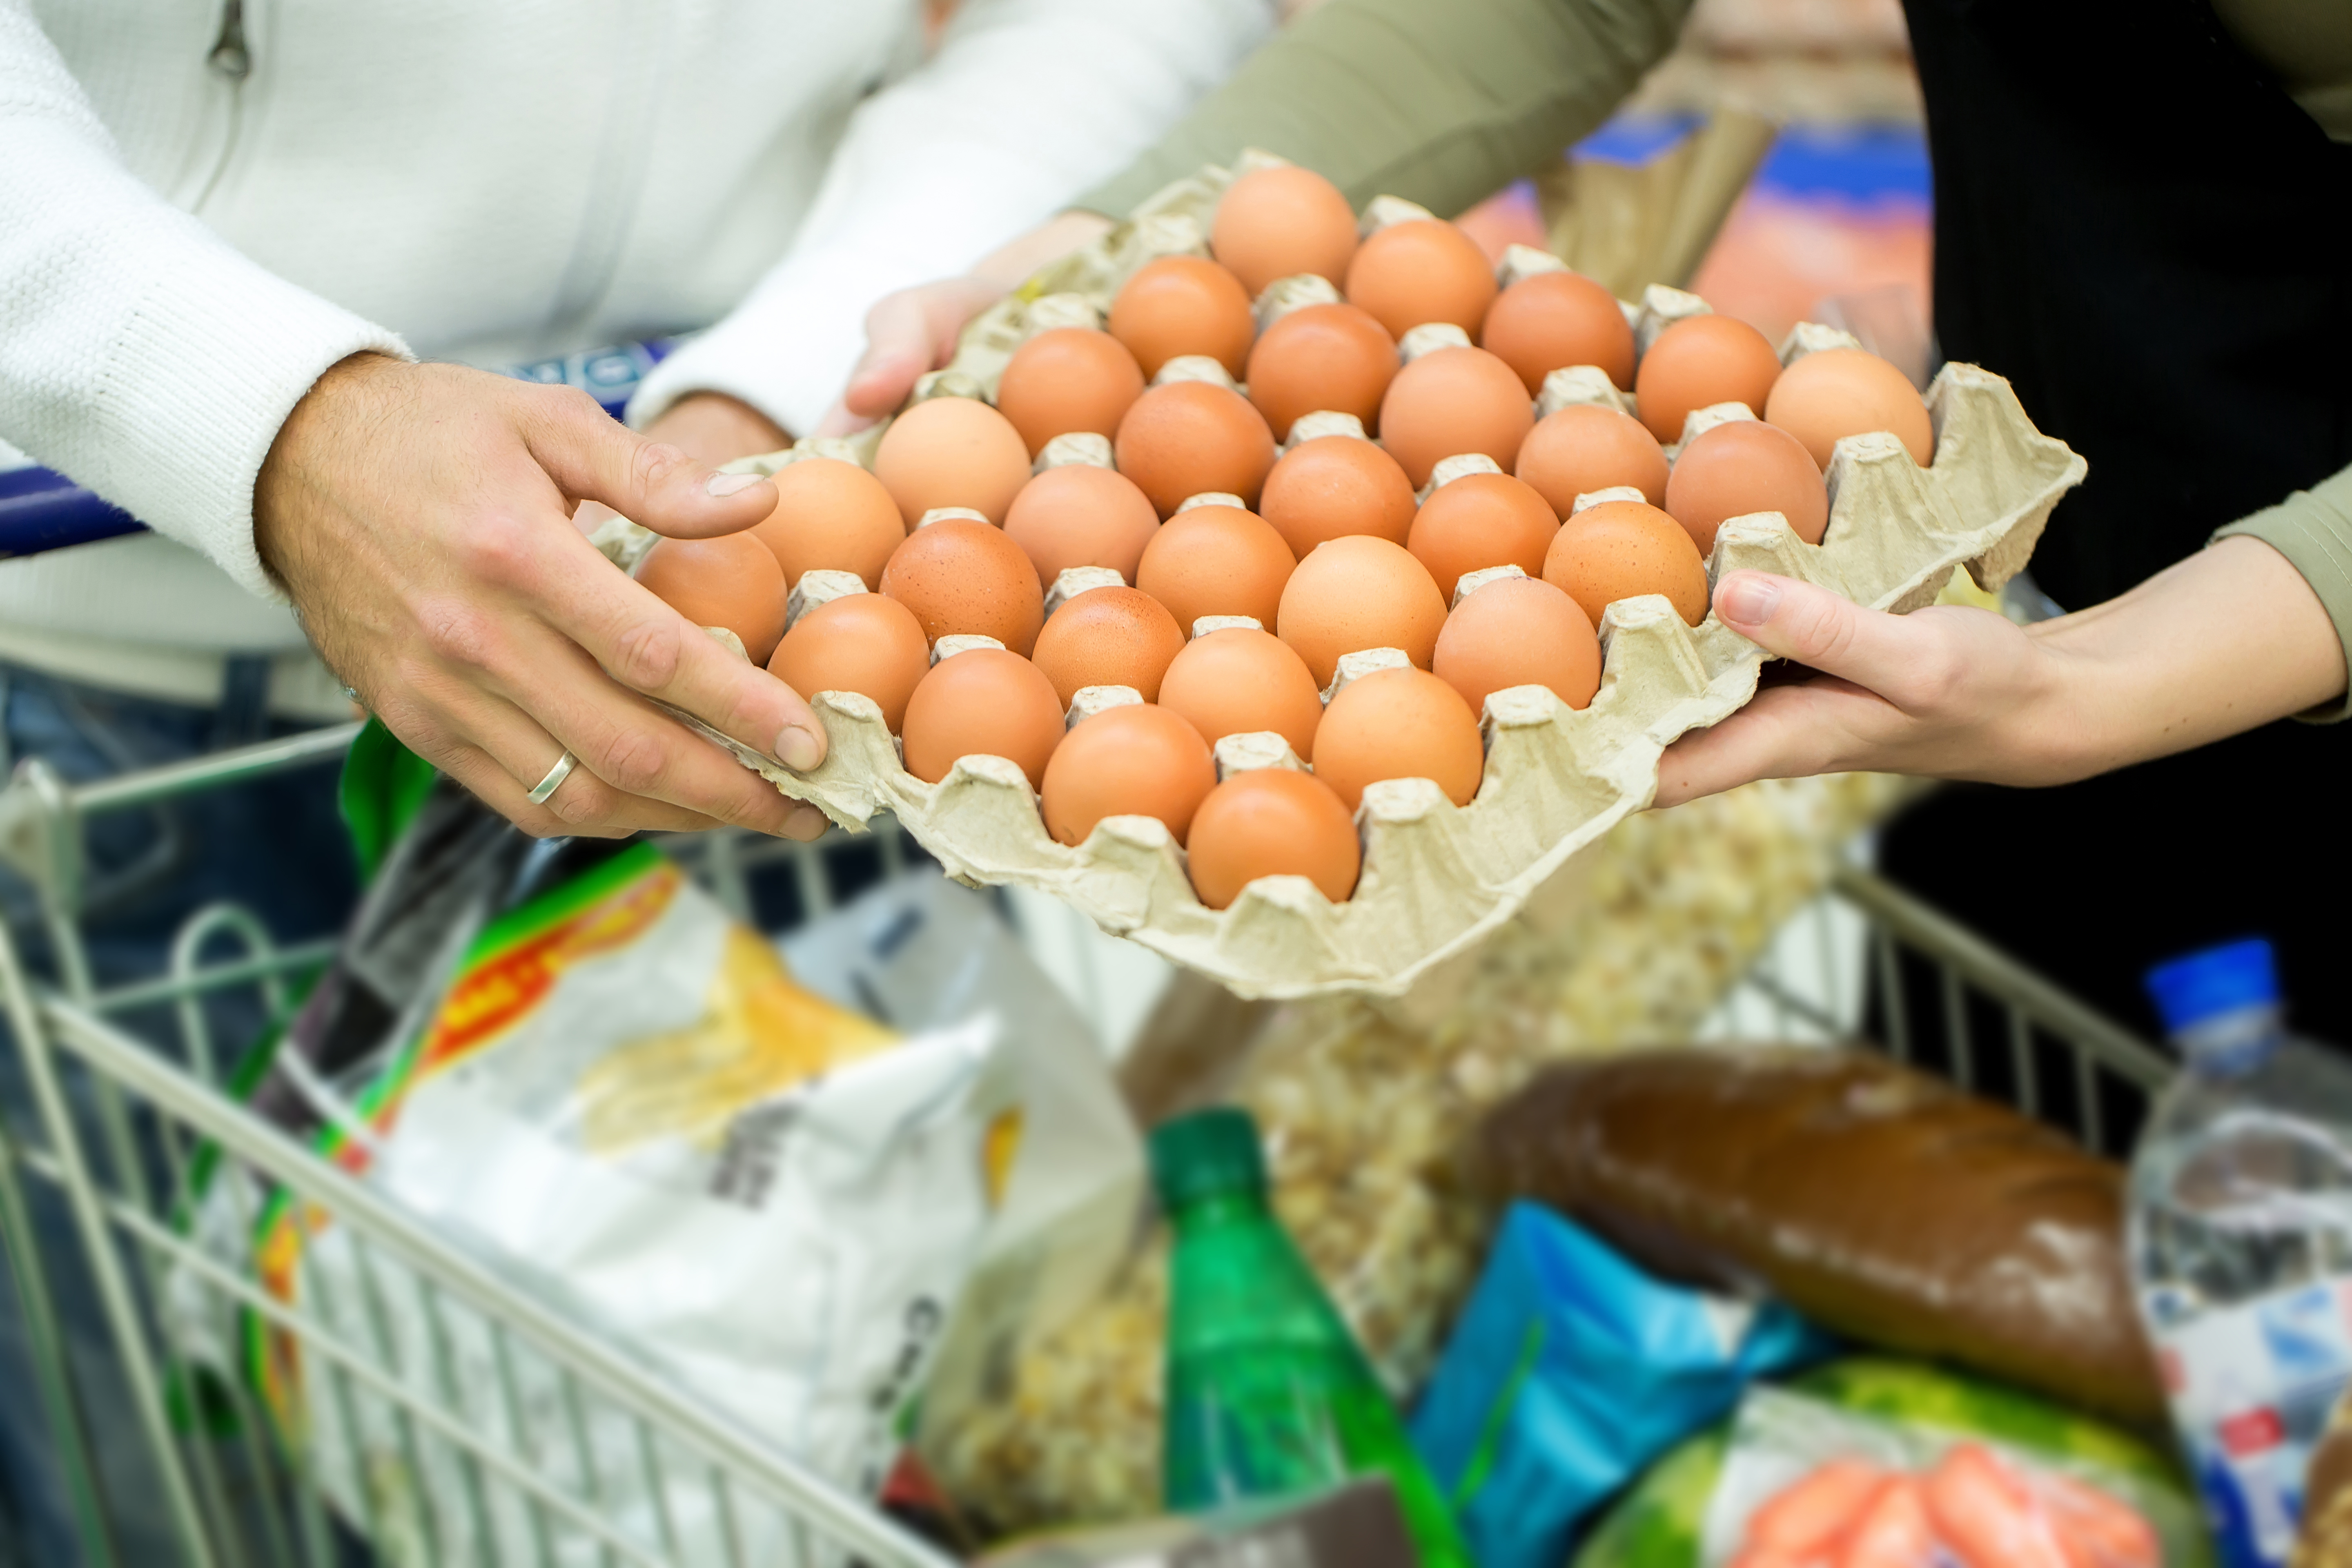 Az elkövetkező hónapokban 80 forint is lehet a tojás ára - Blikk